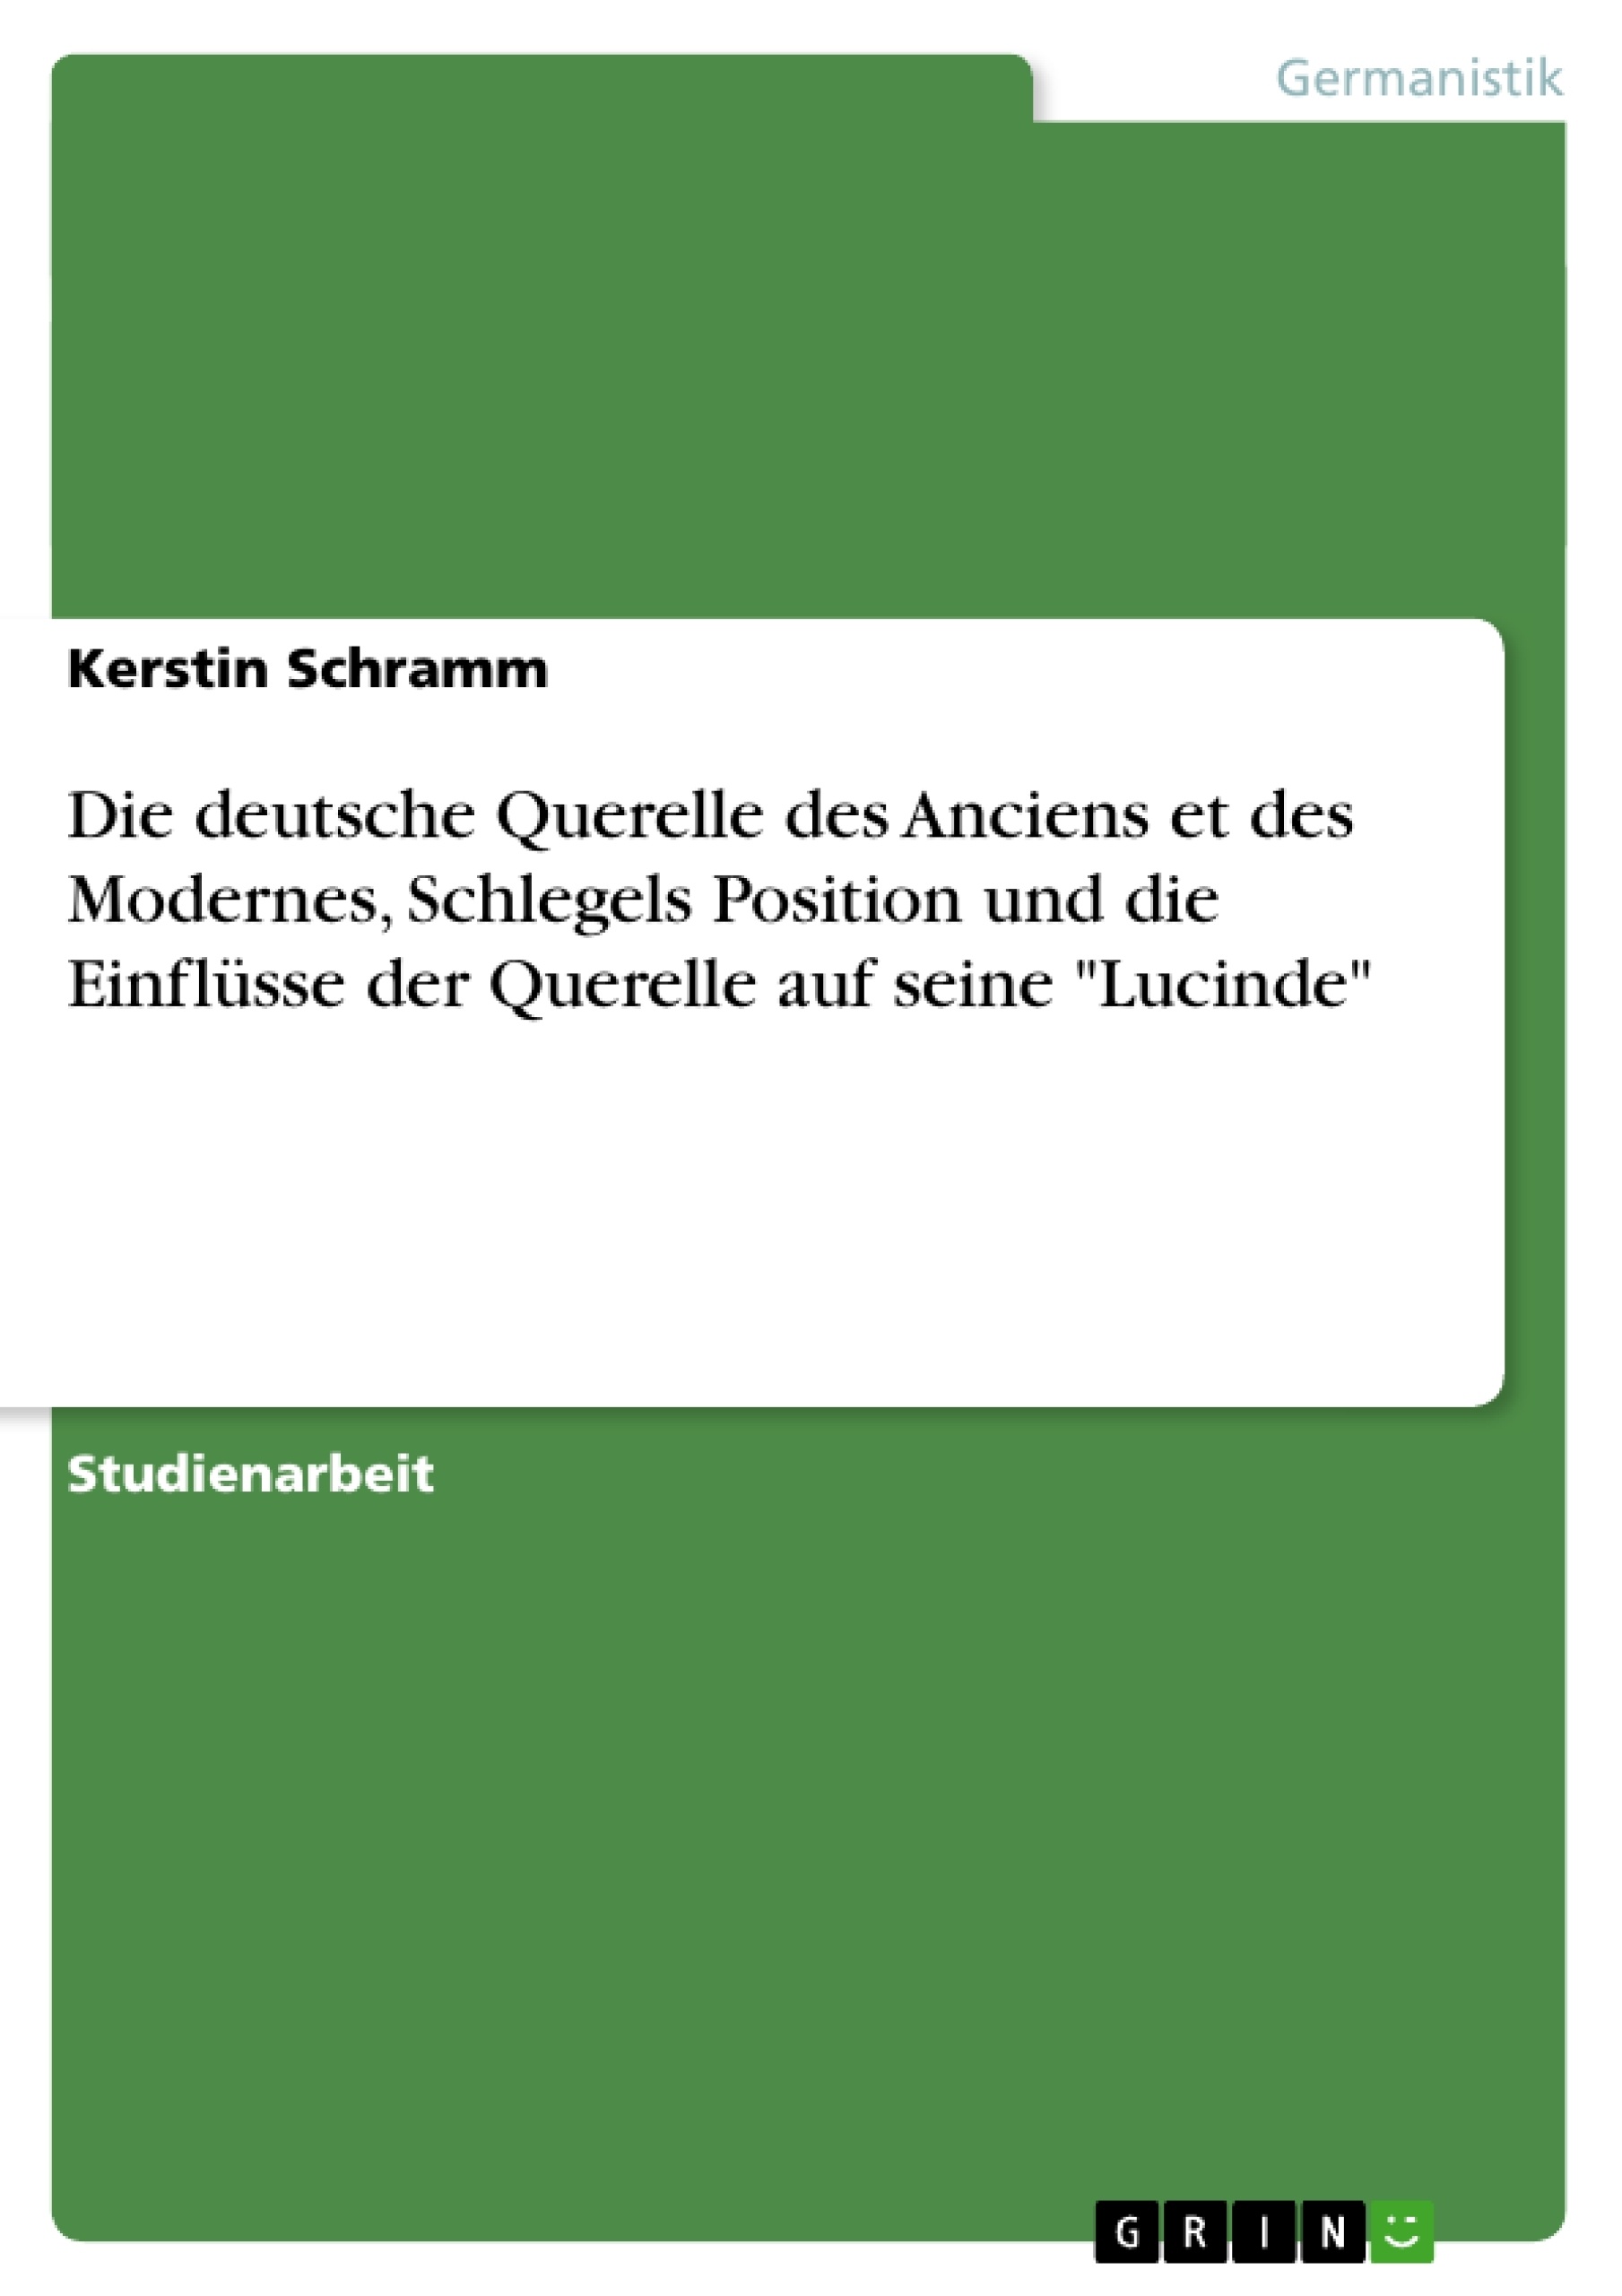 Titel: Die deutsche Querelle des Anciens et des Modernes, Schlegels Position und die Einflüsse der Querelle auf seine "Lucinde"